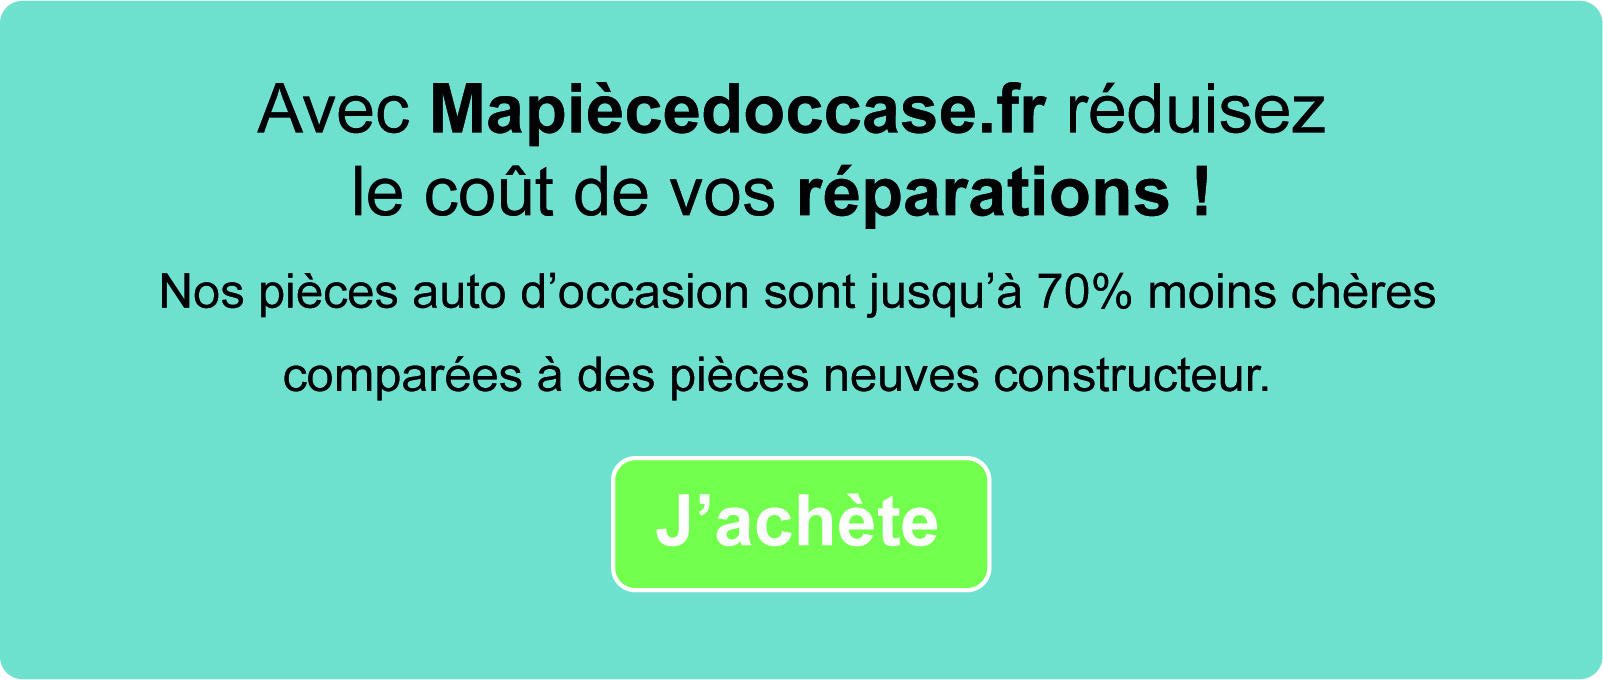 Réduisez le coût de vos réparations sur Mapiècedoccase.fr